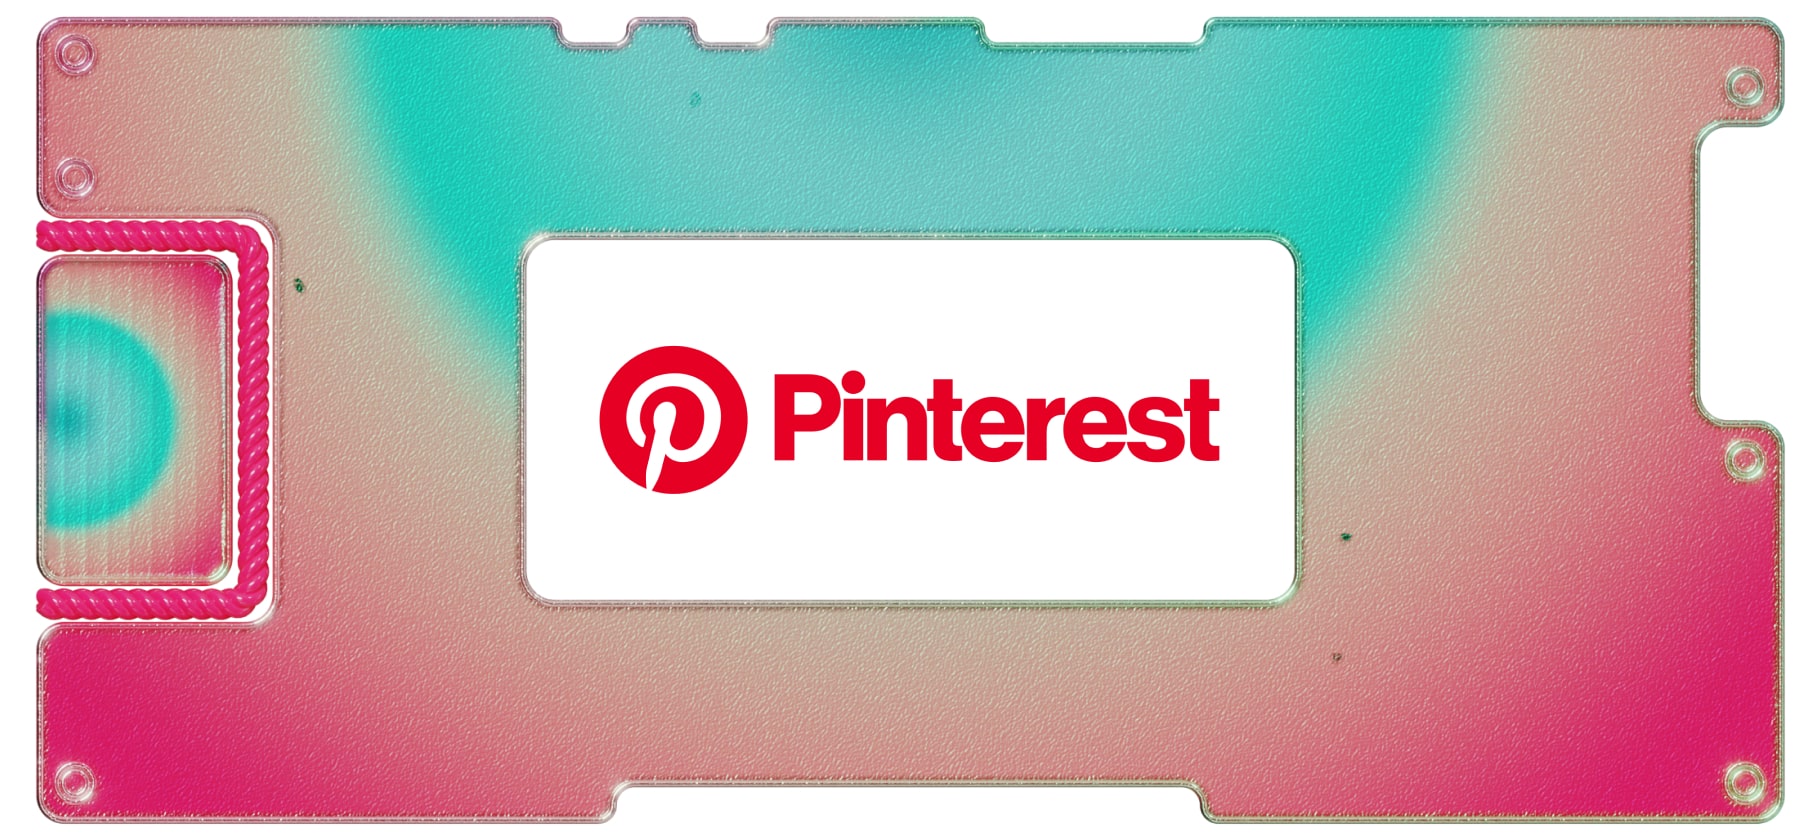 Картинки и деньги из воздуха: как устроен бизнес Pinterest